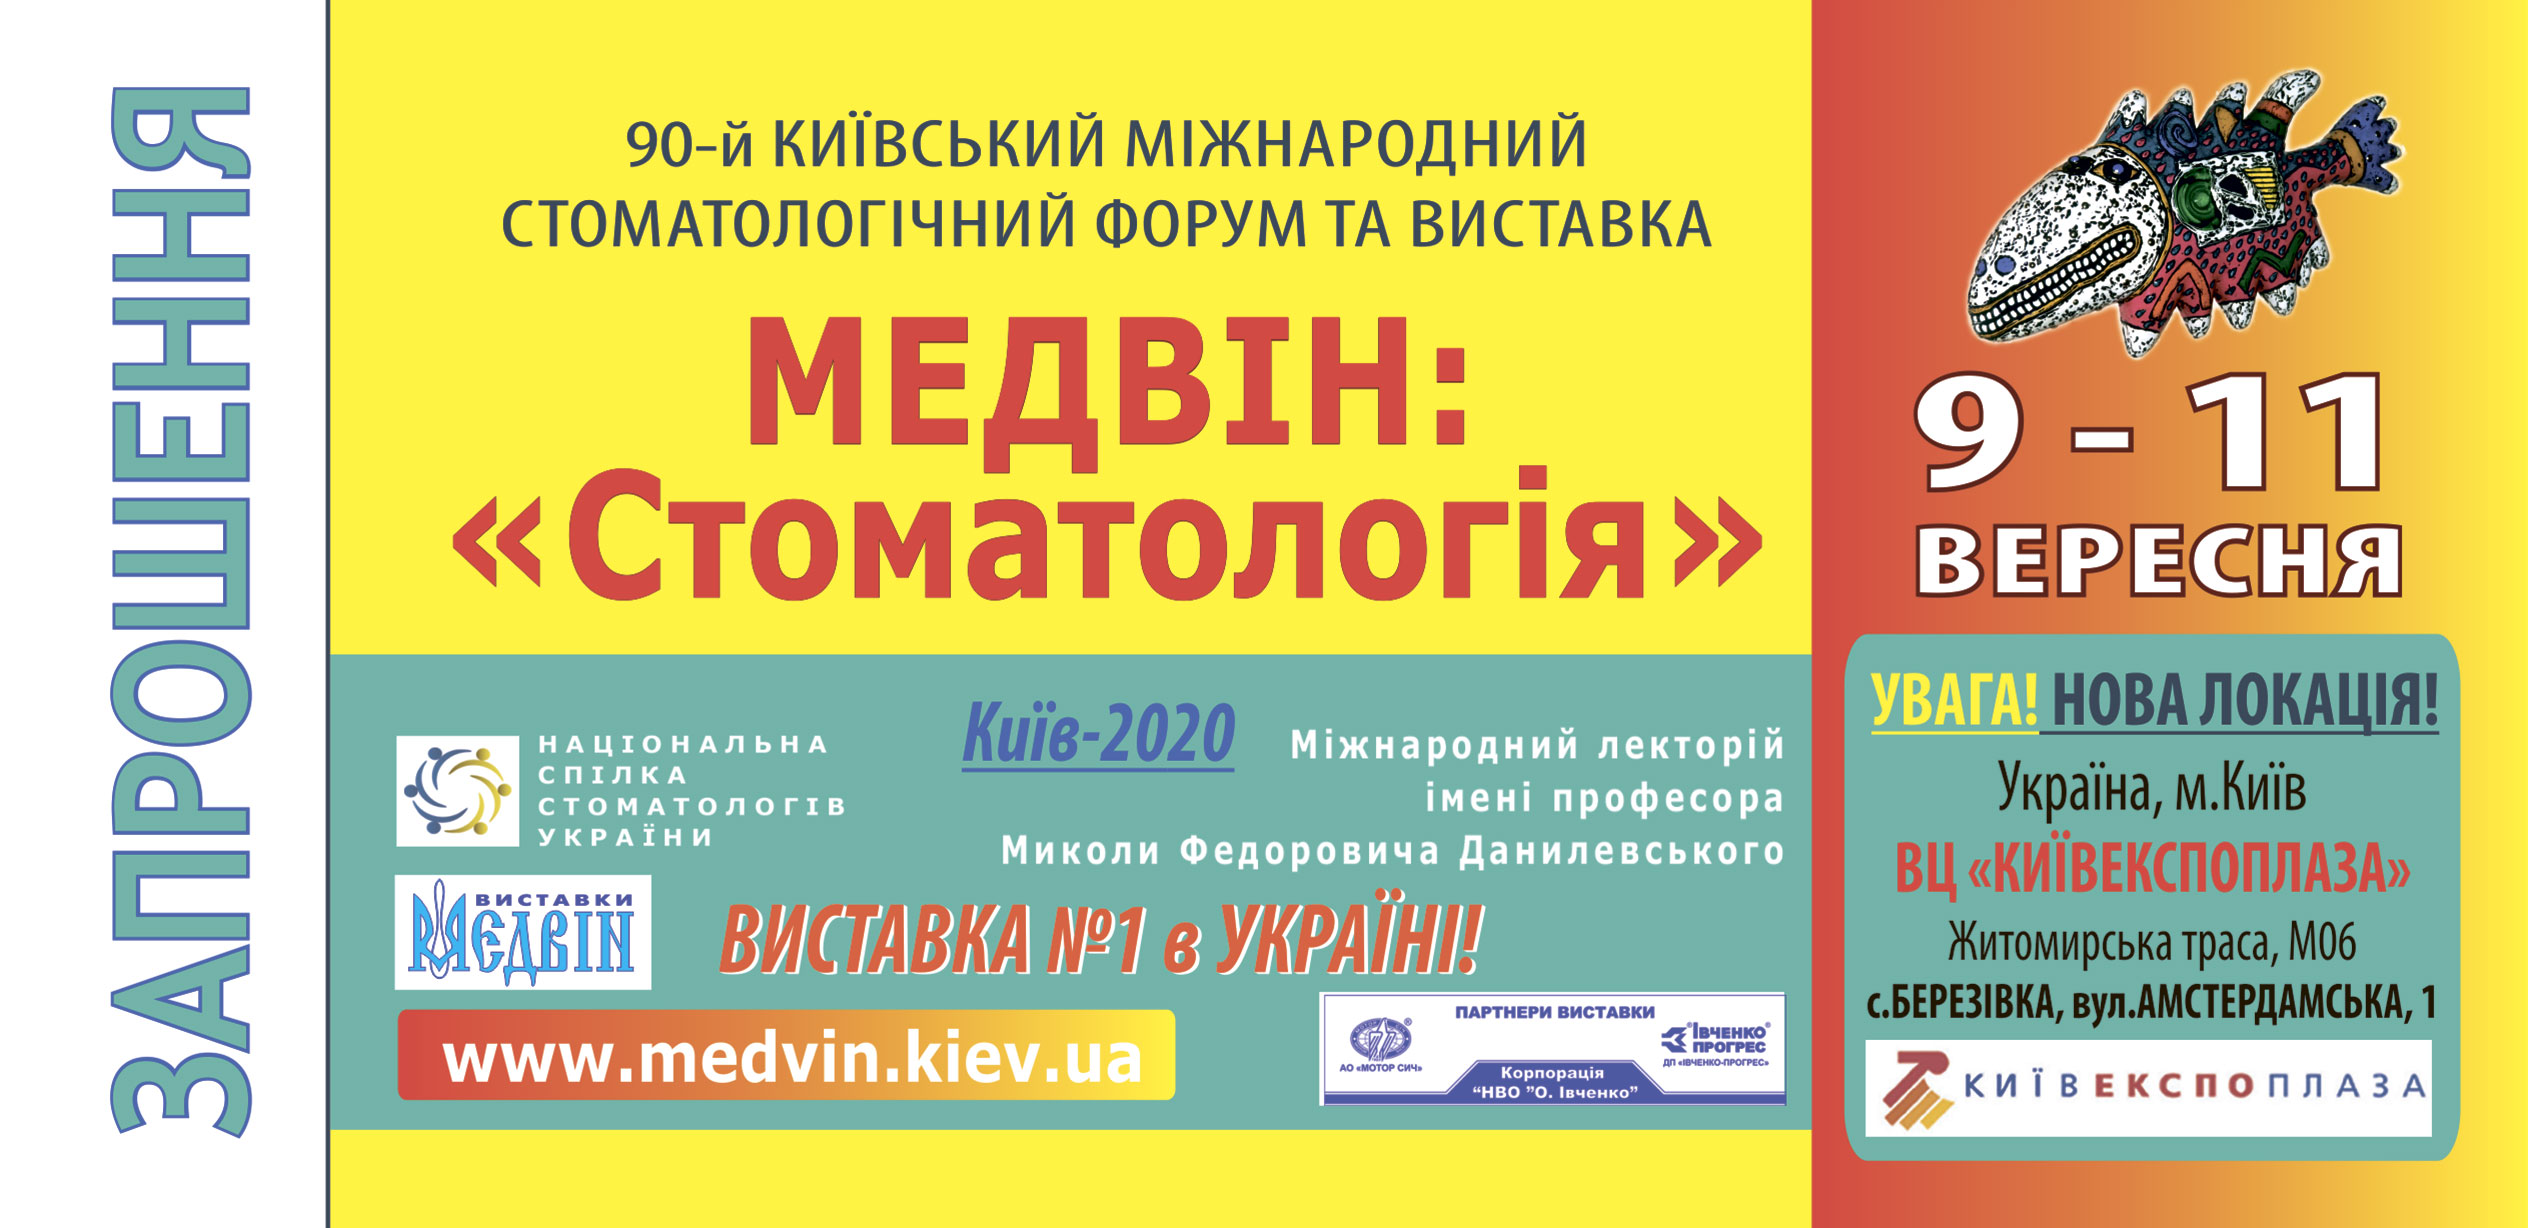 Квиток на виставку "МЕДВІН: Стоматологія - КИЇВ, 9-11 вересня 2020